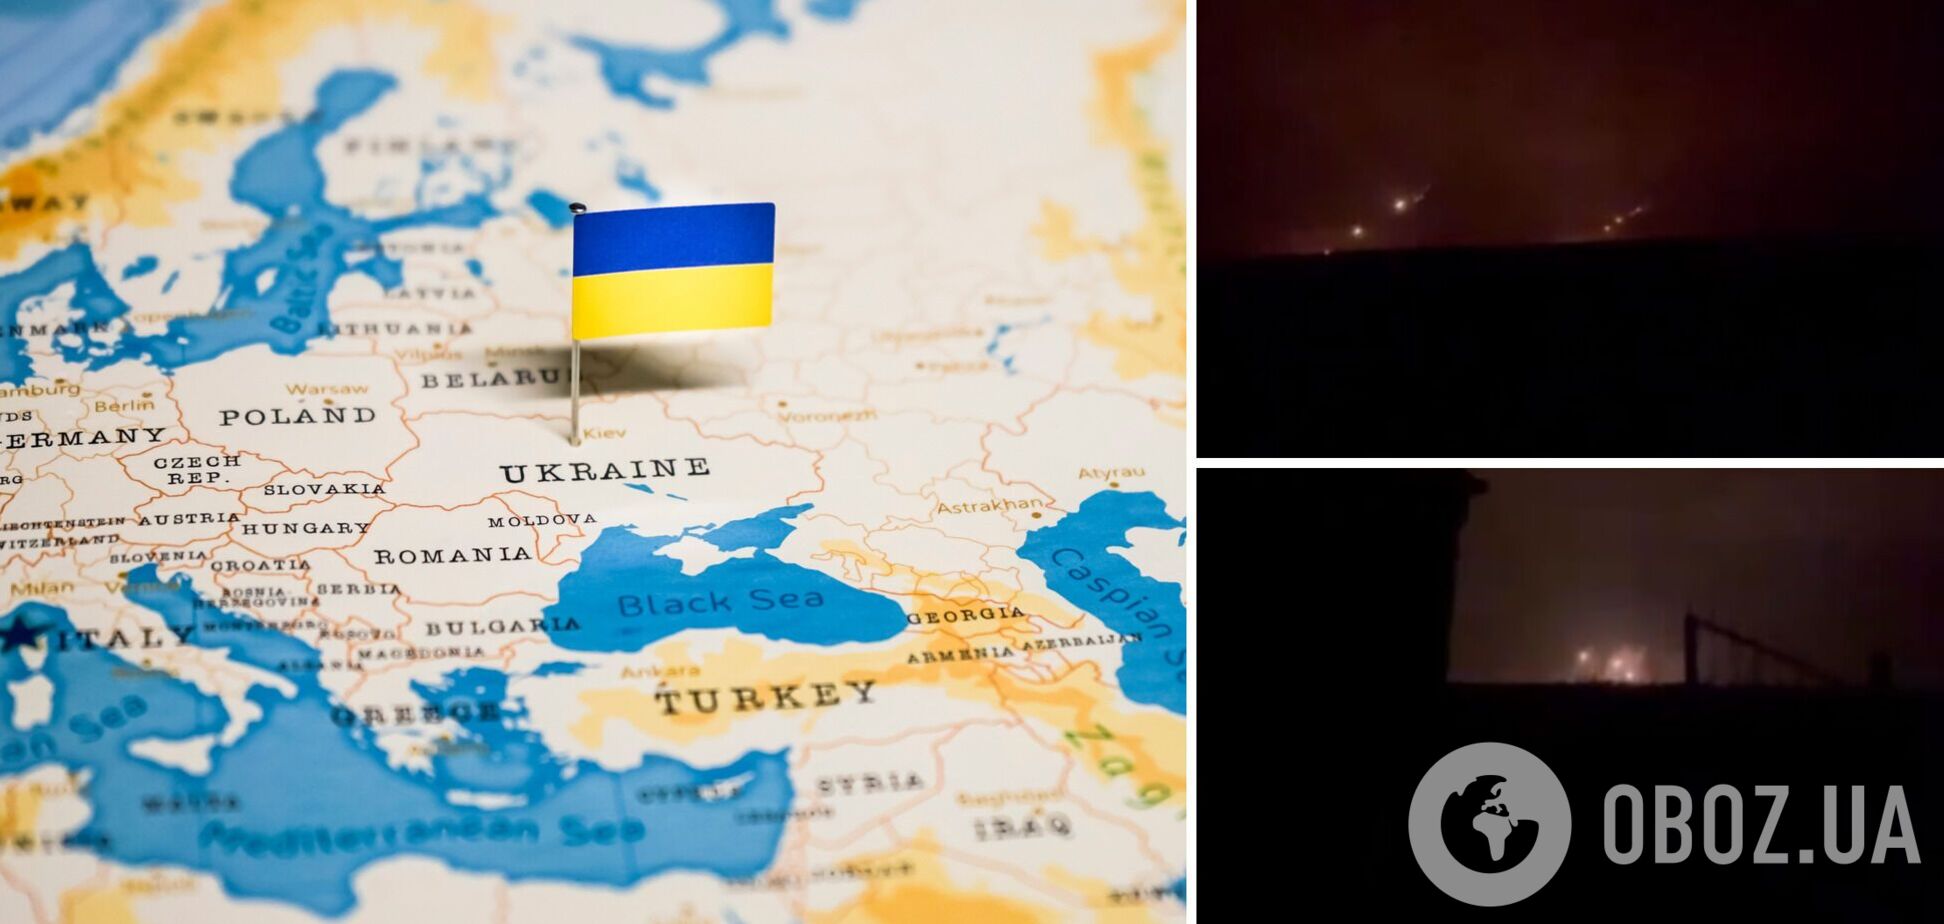 Россия накрыла 'Градами' всю границу Украины от Луганска до Житомира – Госпогранслужба